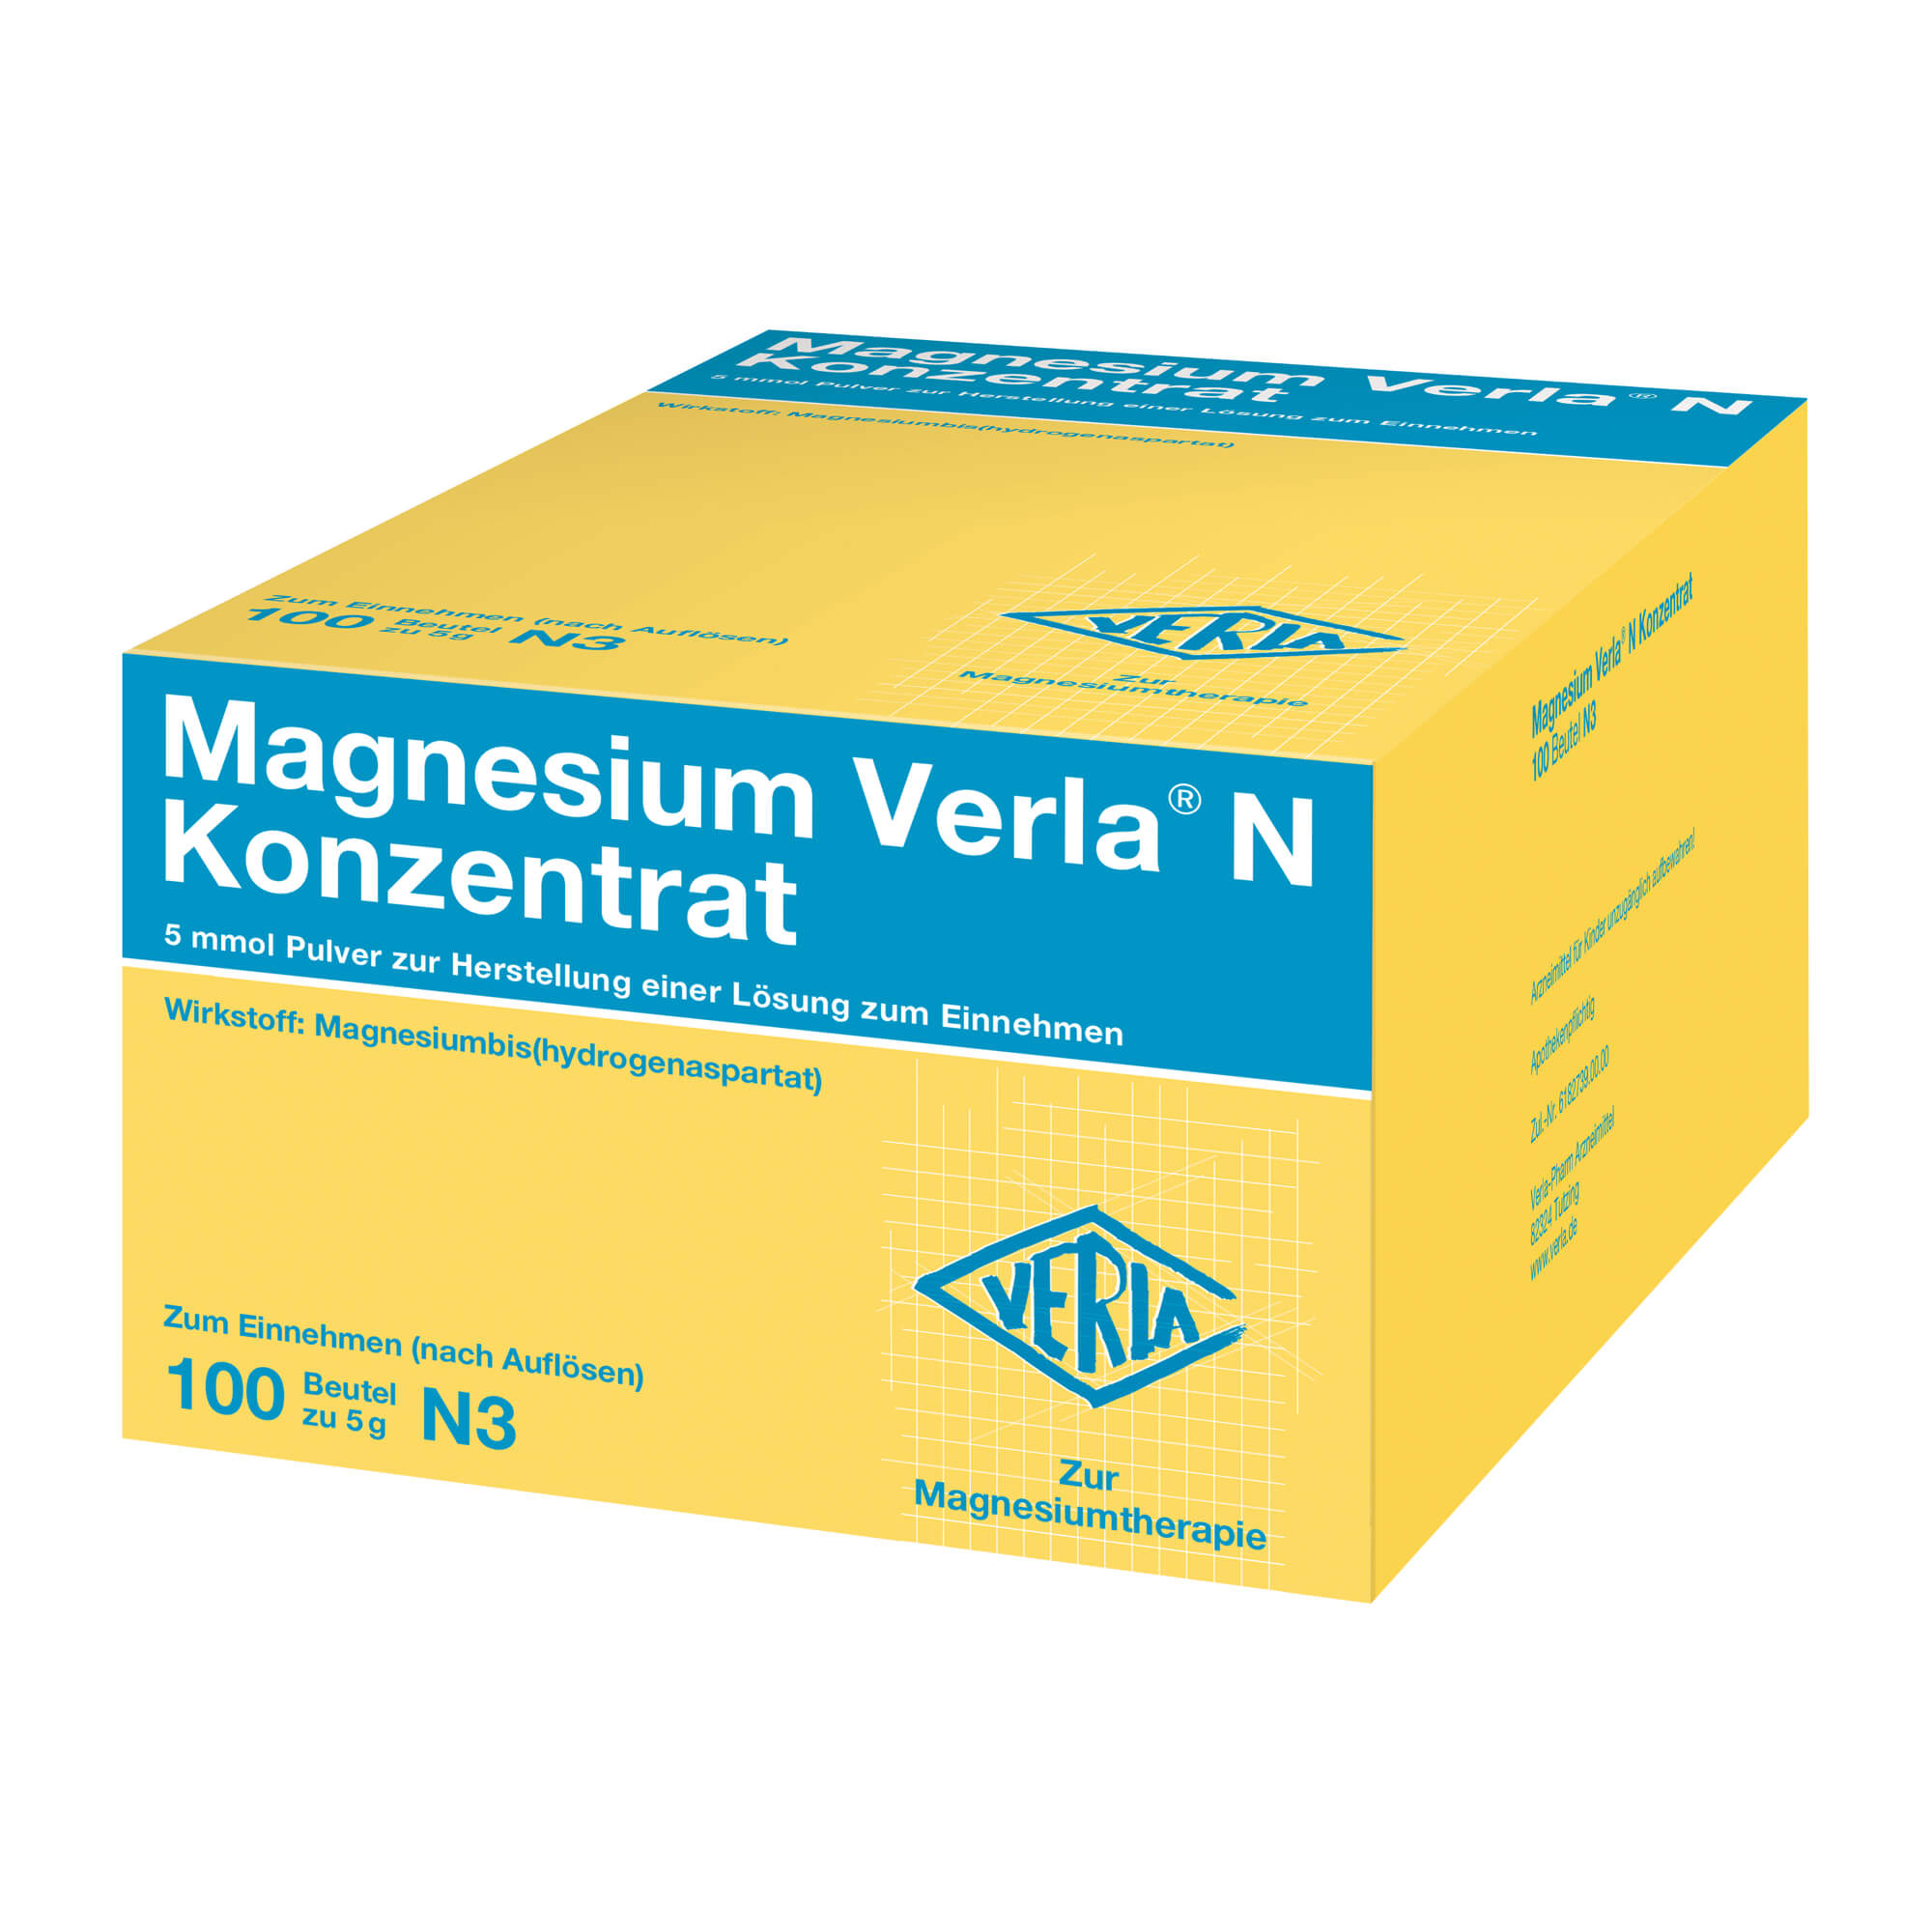 Mineralstoffpräparat zur Behandlung von therapiebedürftigen Magnesiummangelzuständen, die keiner Injektion/Infusion bedürfen.